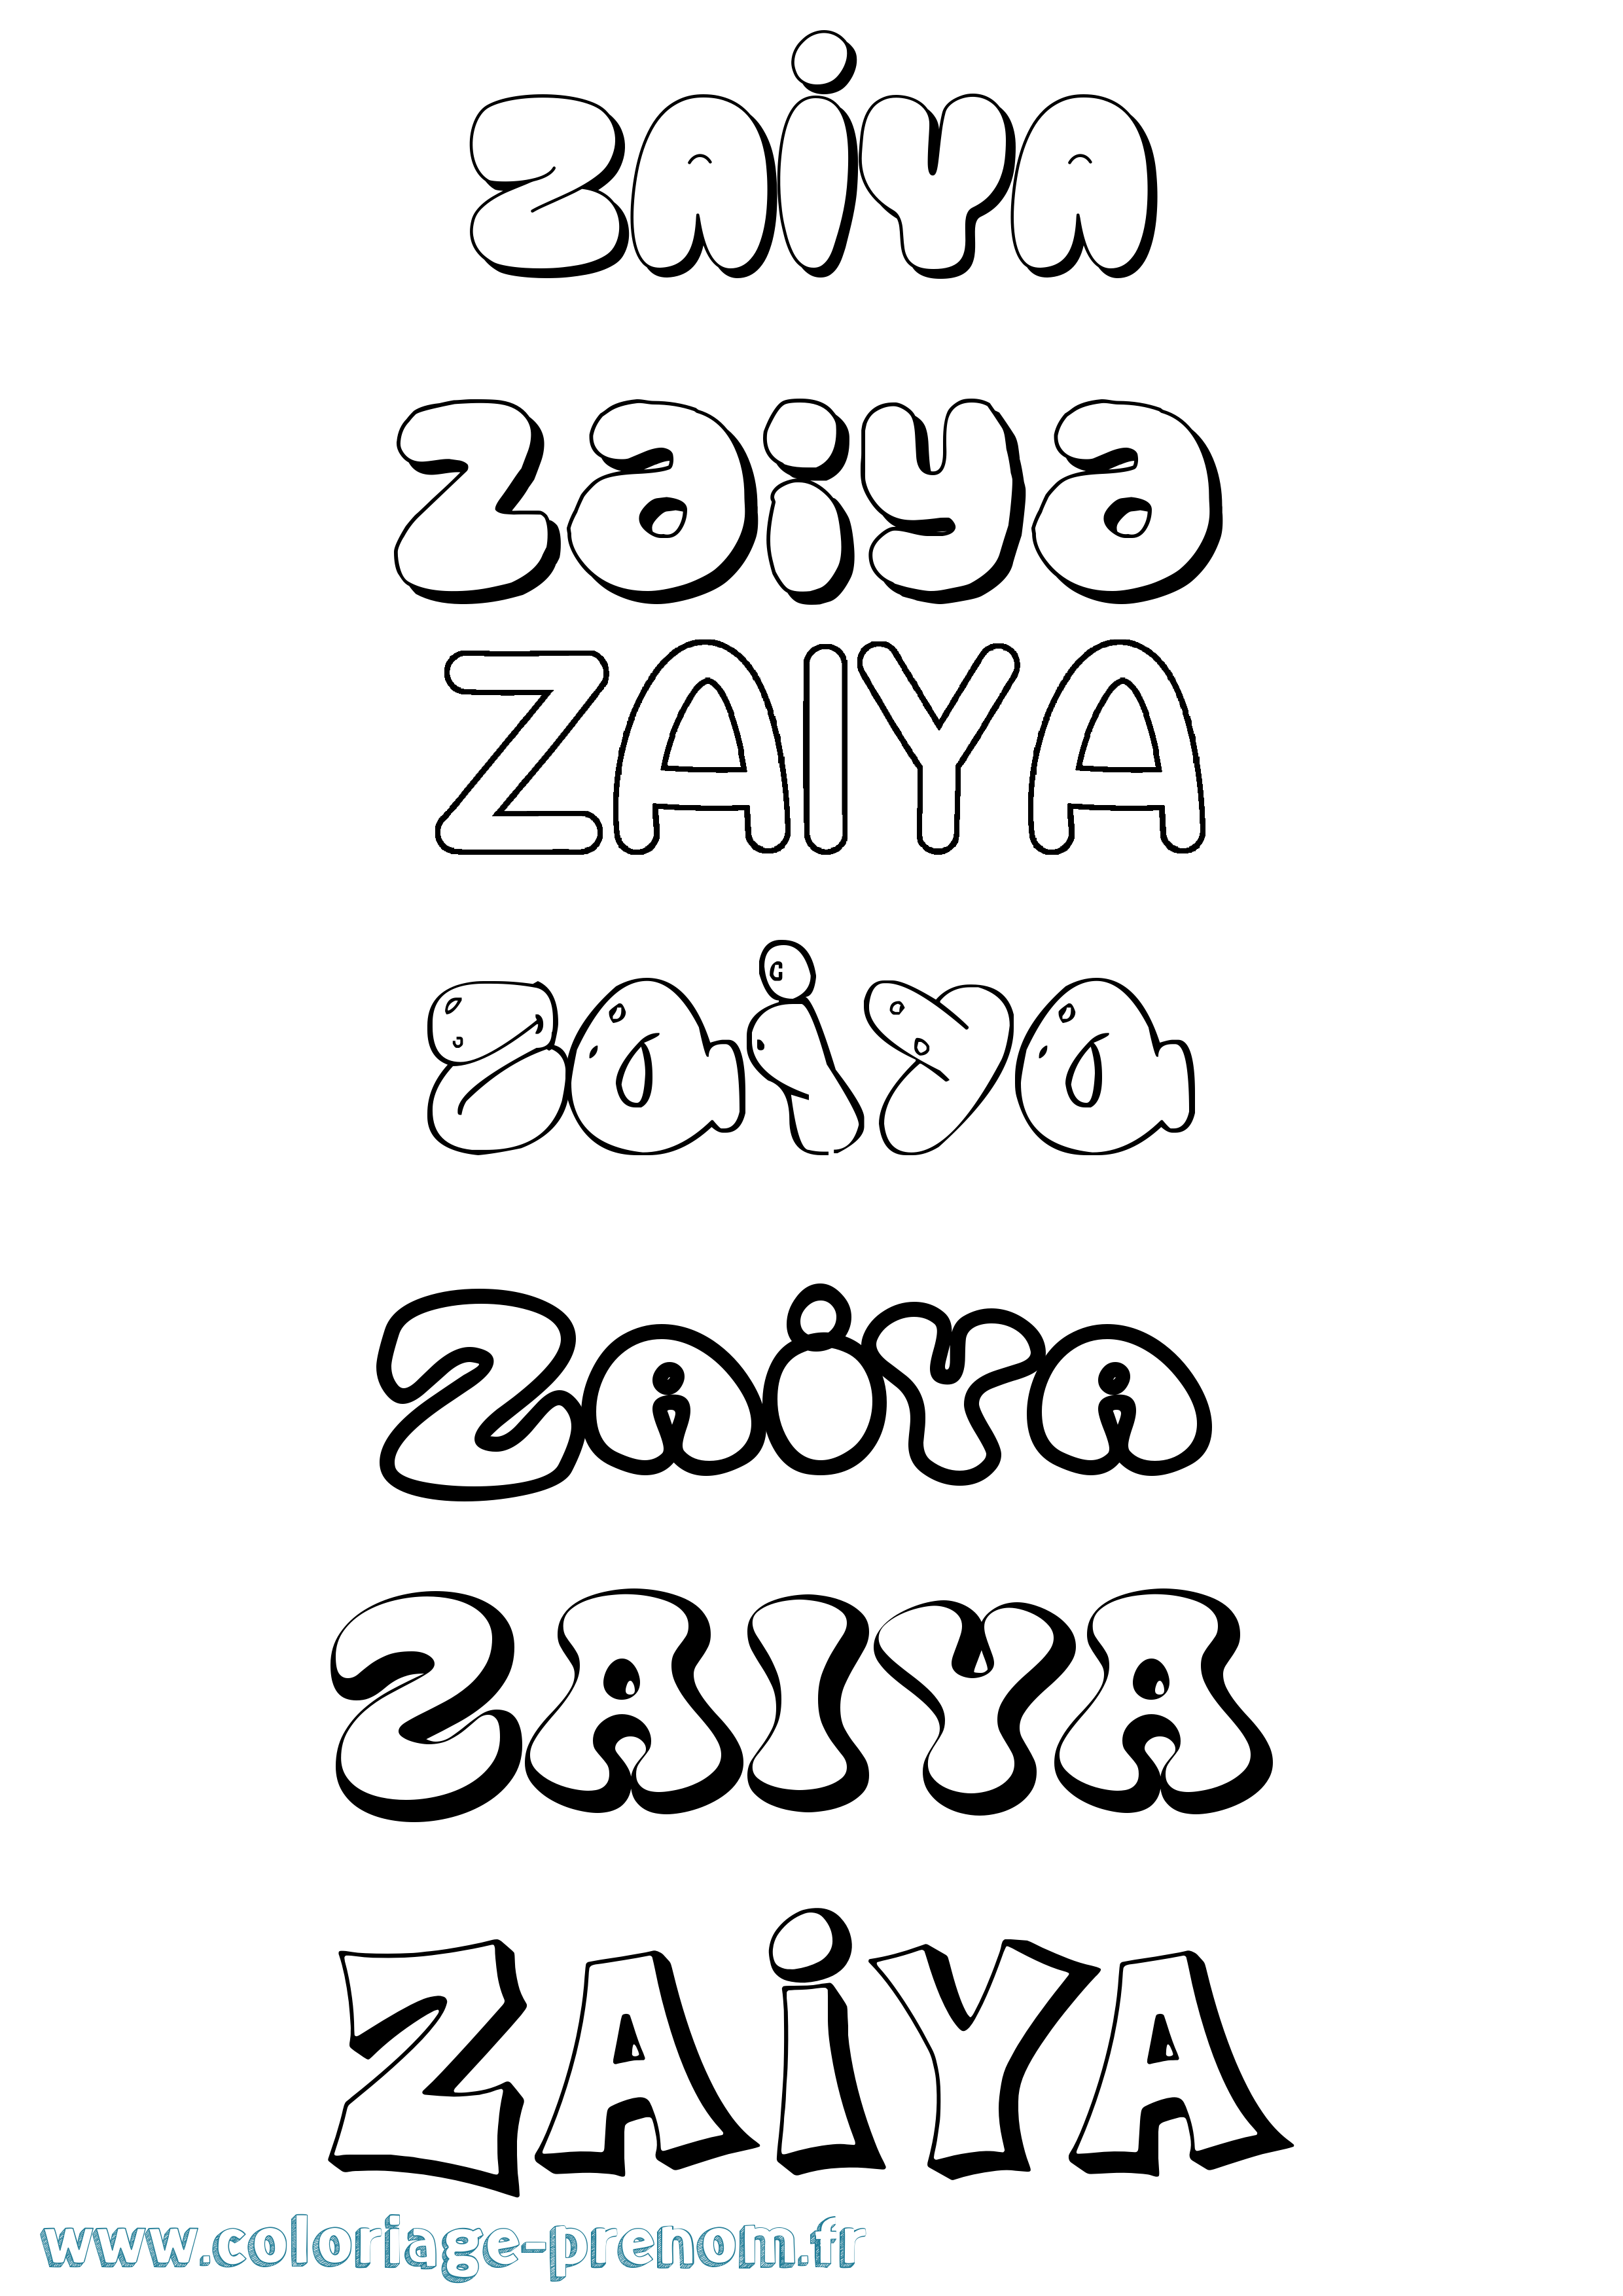 Coloriage prénom Zaiya Bubble